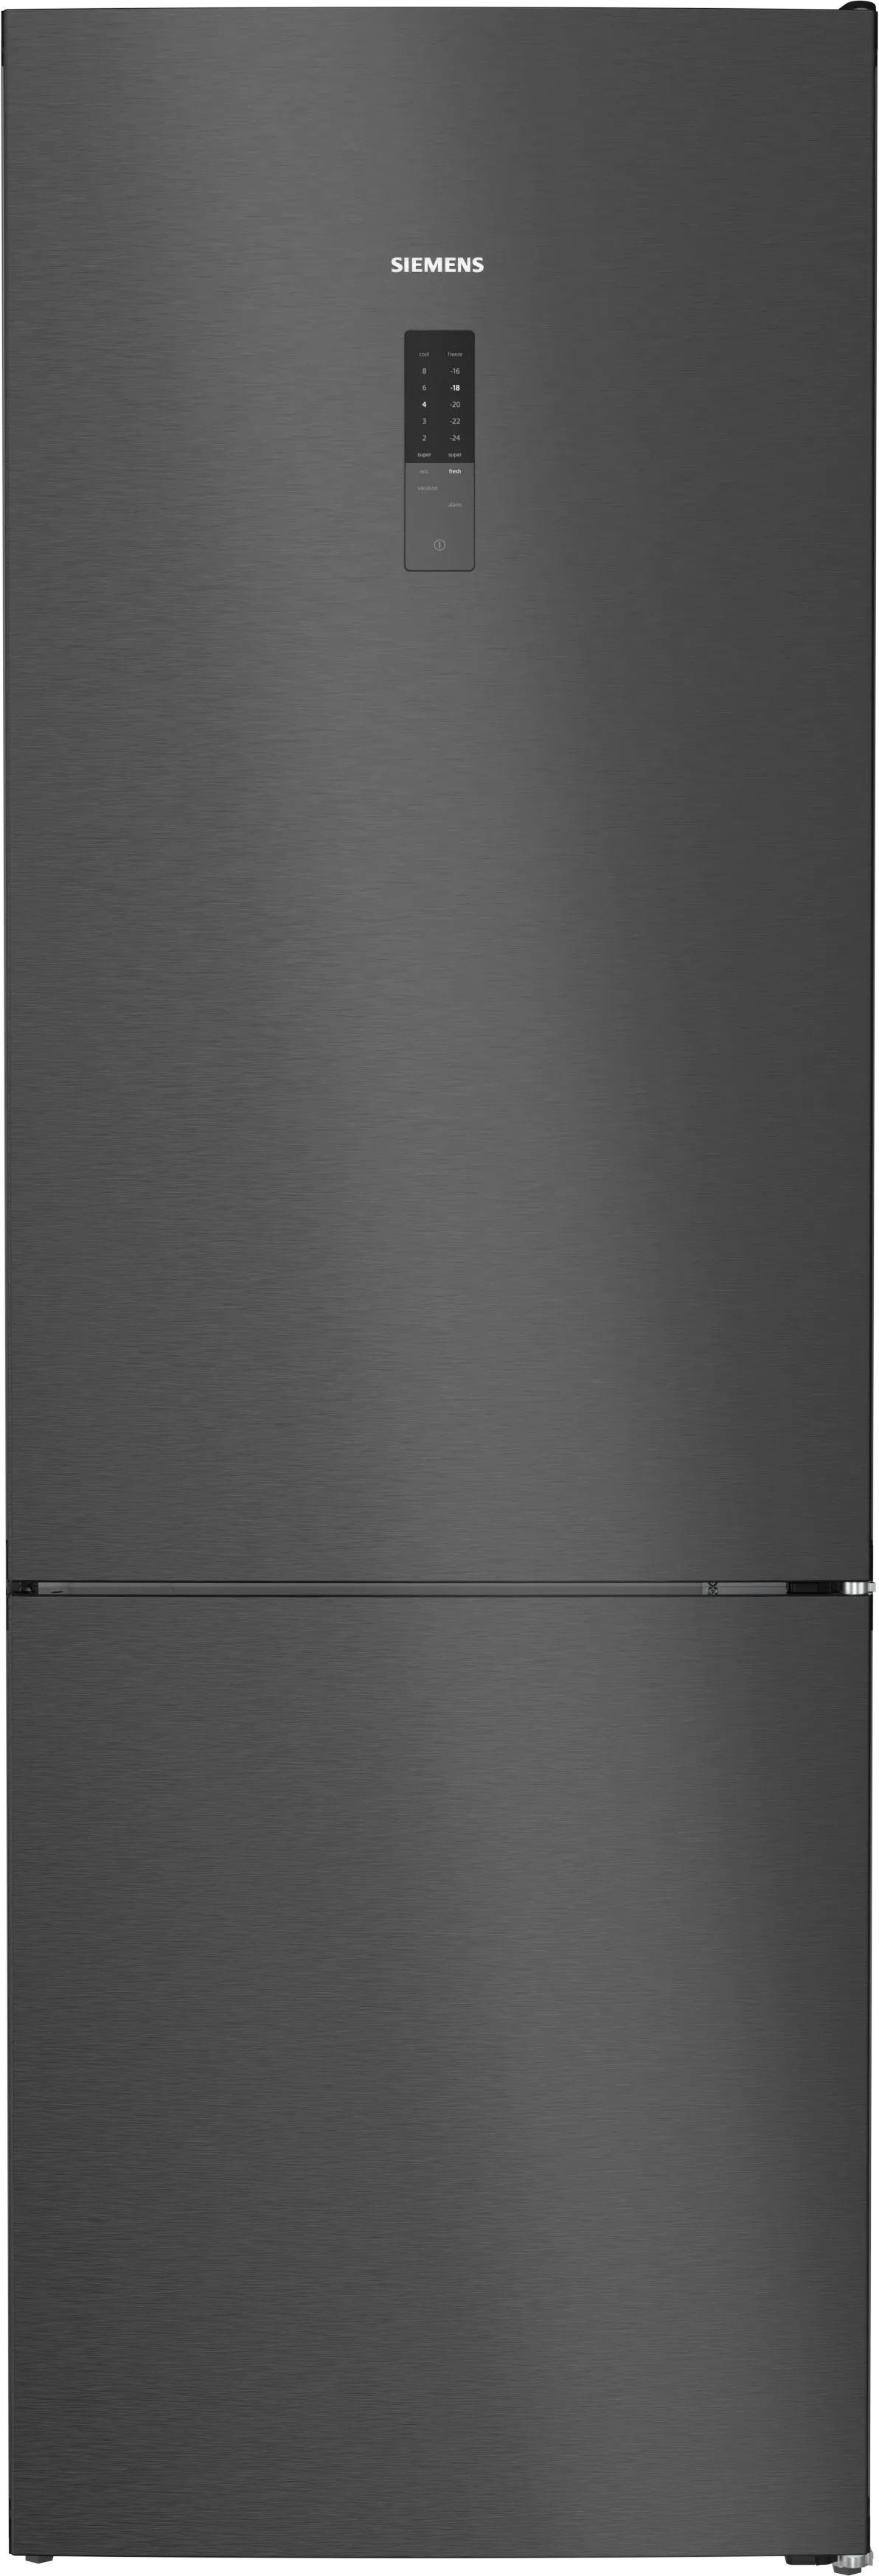 iQ300 Vrijstaande koel-vriescombinatie met bottom-freezer 203 x 70 cm Zwart geborsteld staal antiFingerprint 